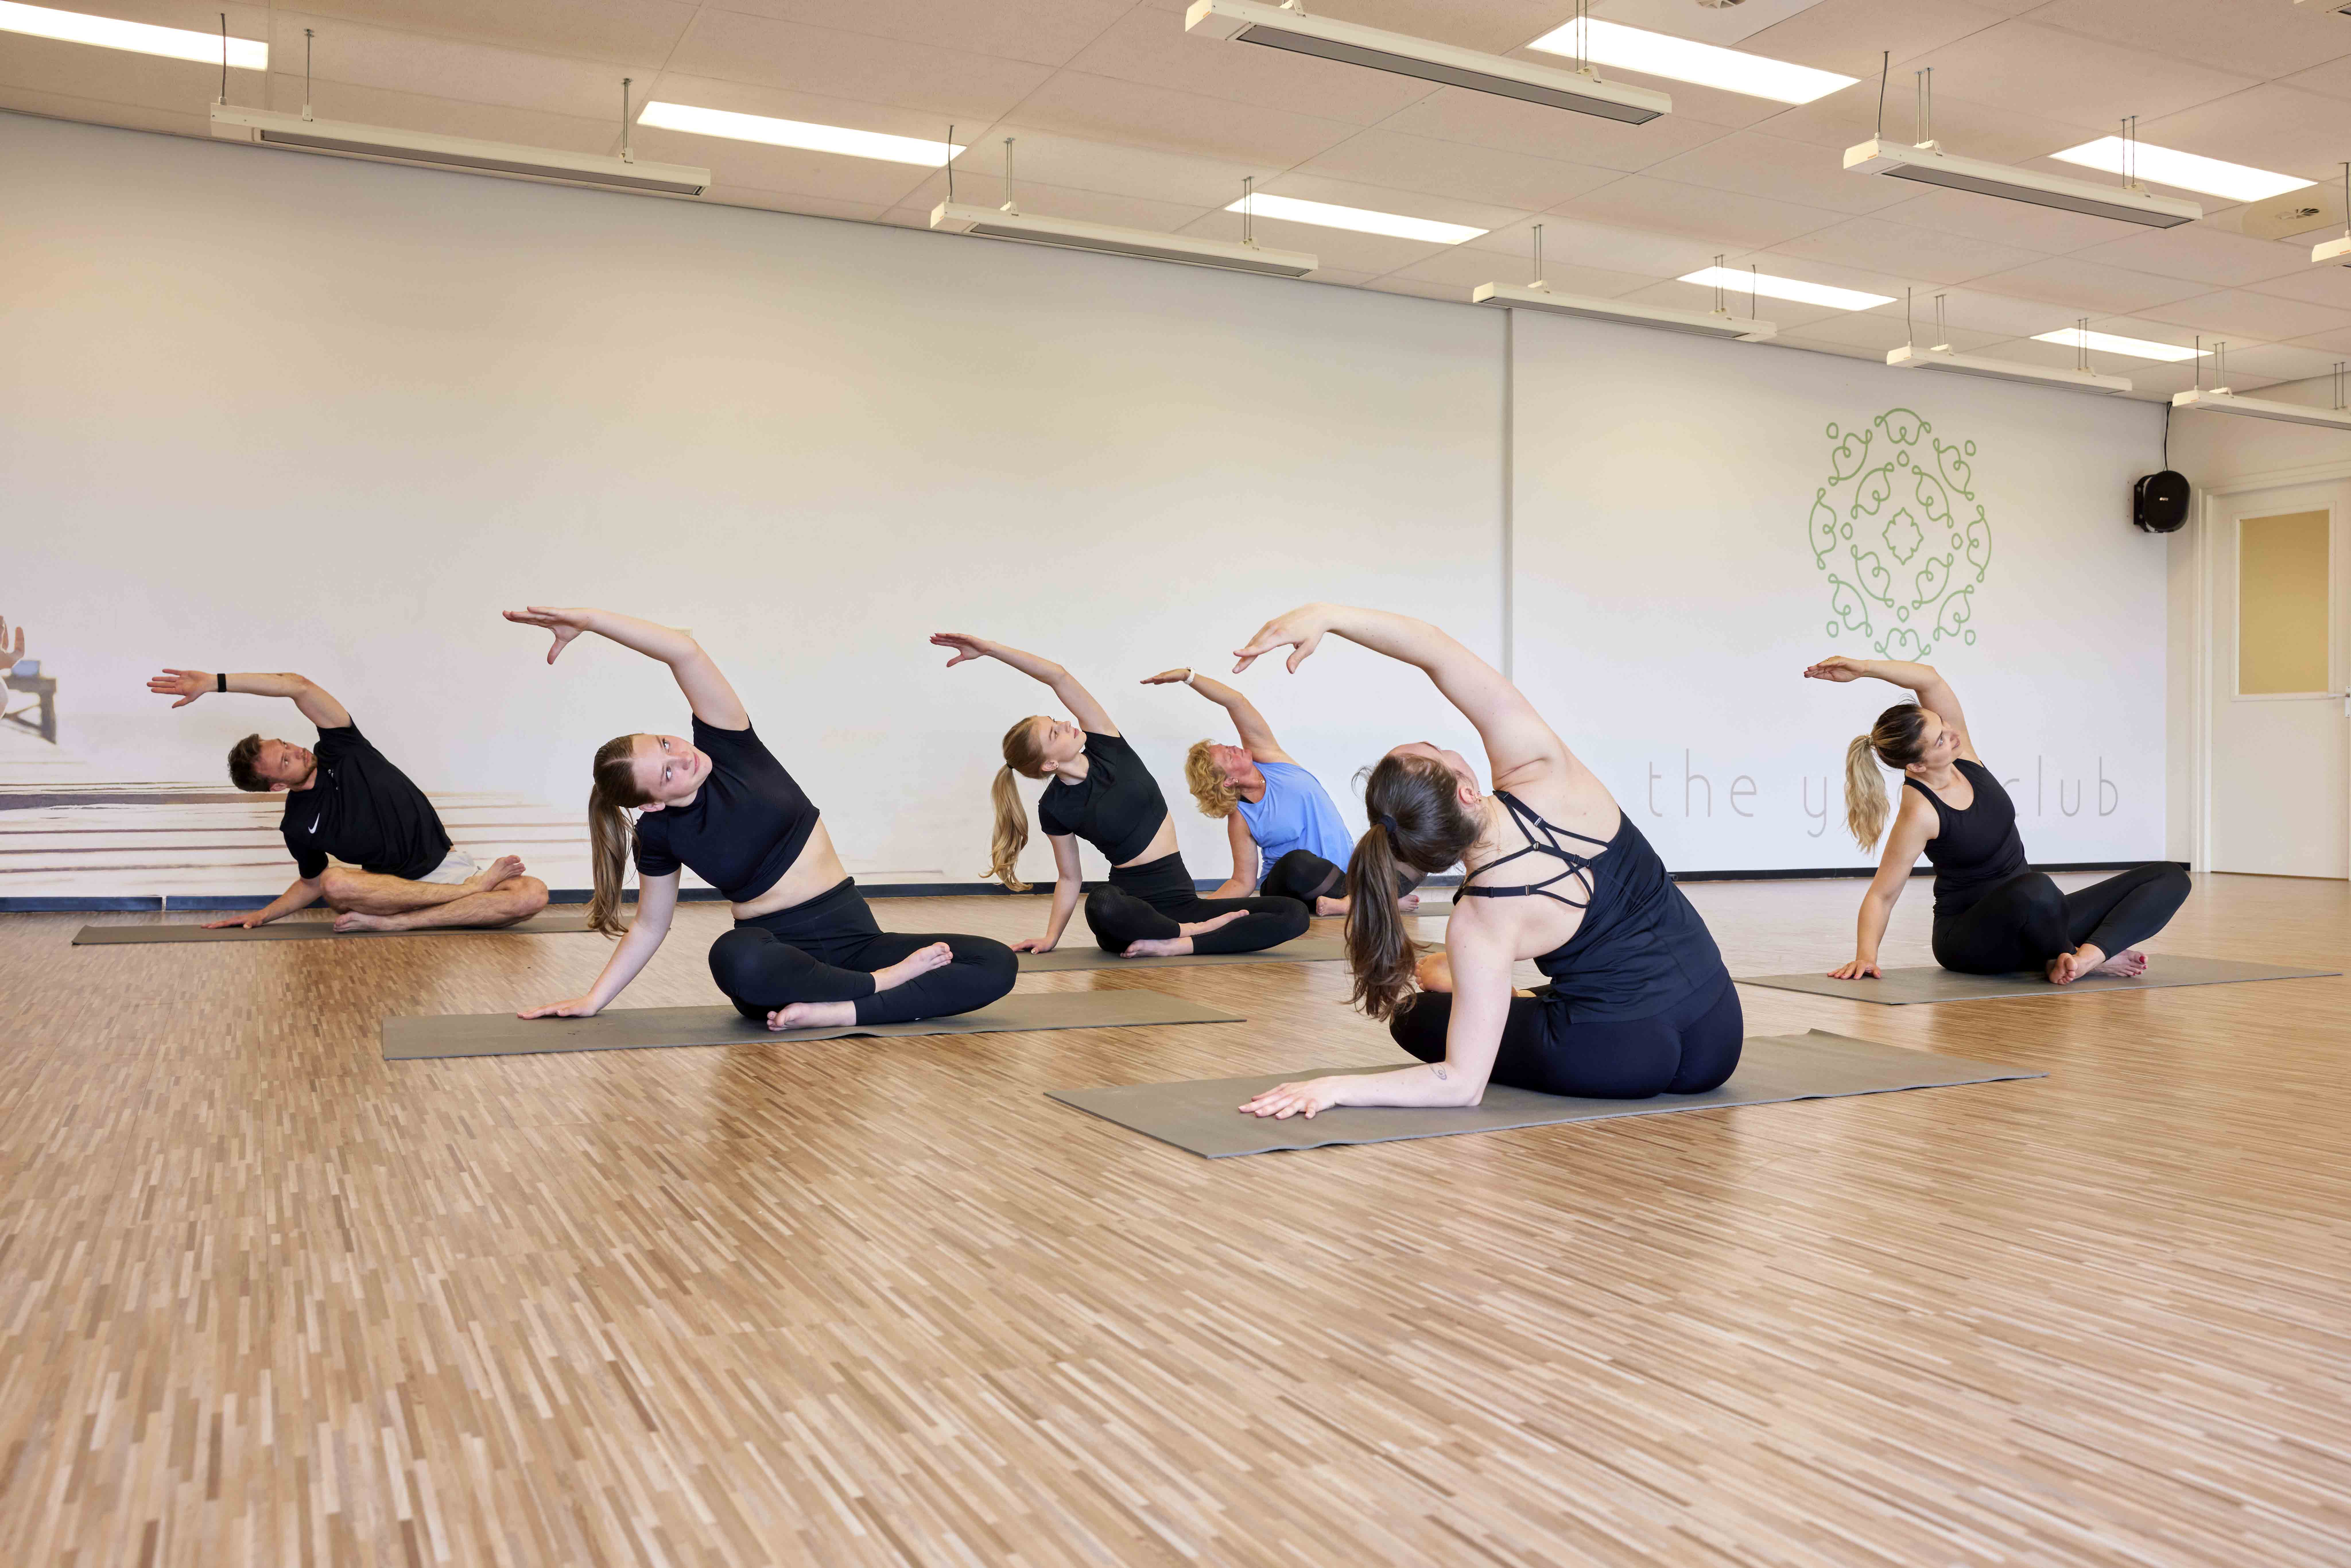 Tijdens de les Club Yoga bij Optisport worden zittend strekoefeningen gedaan door een groep sporters, om ontspanning in lichaam en geest te bevorderen. 